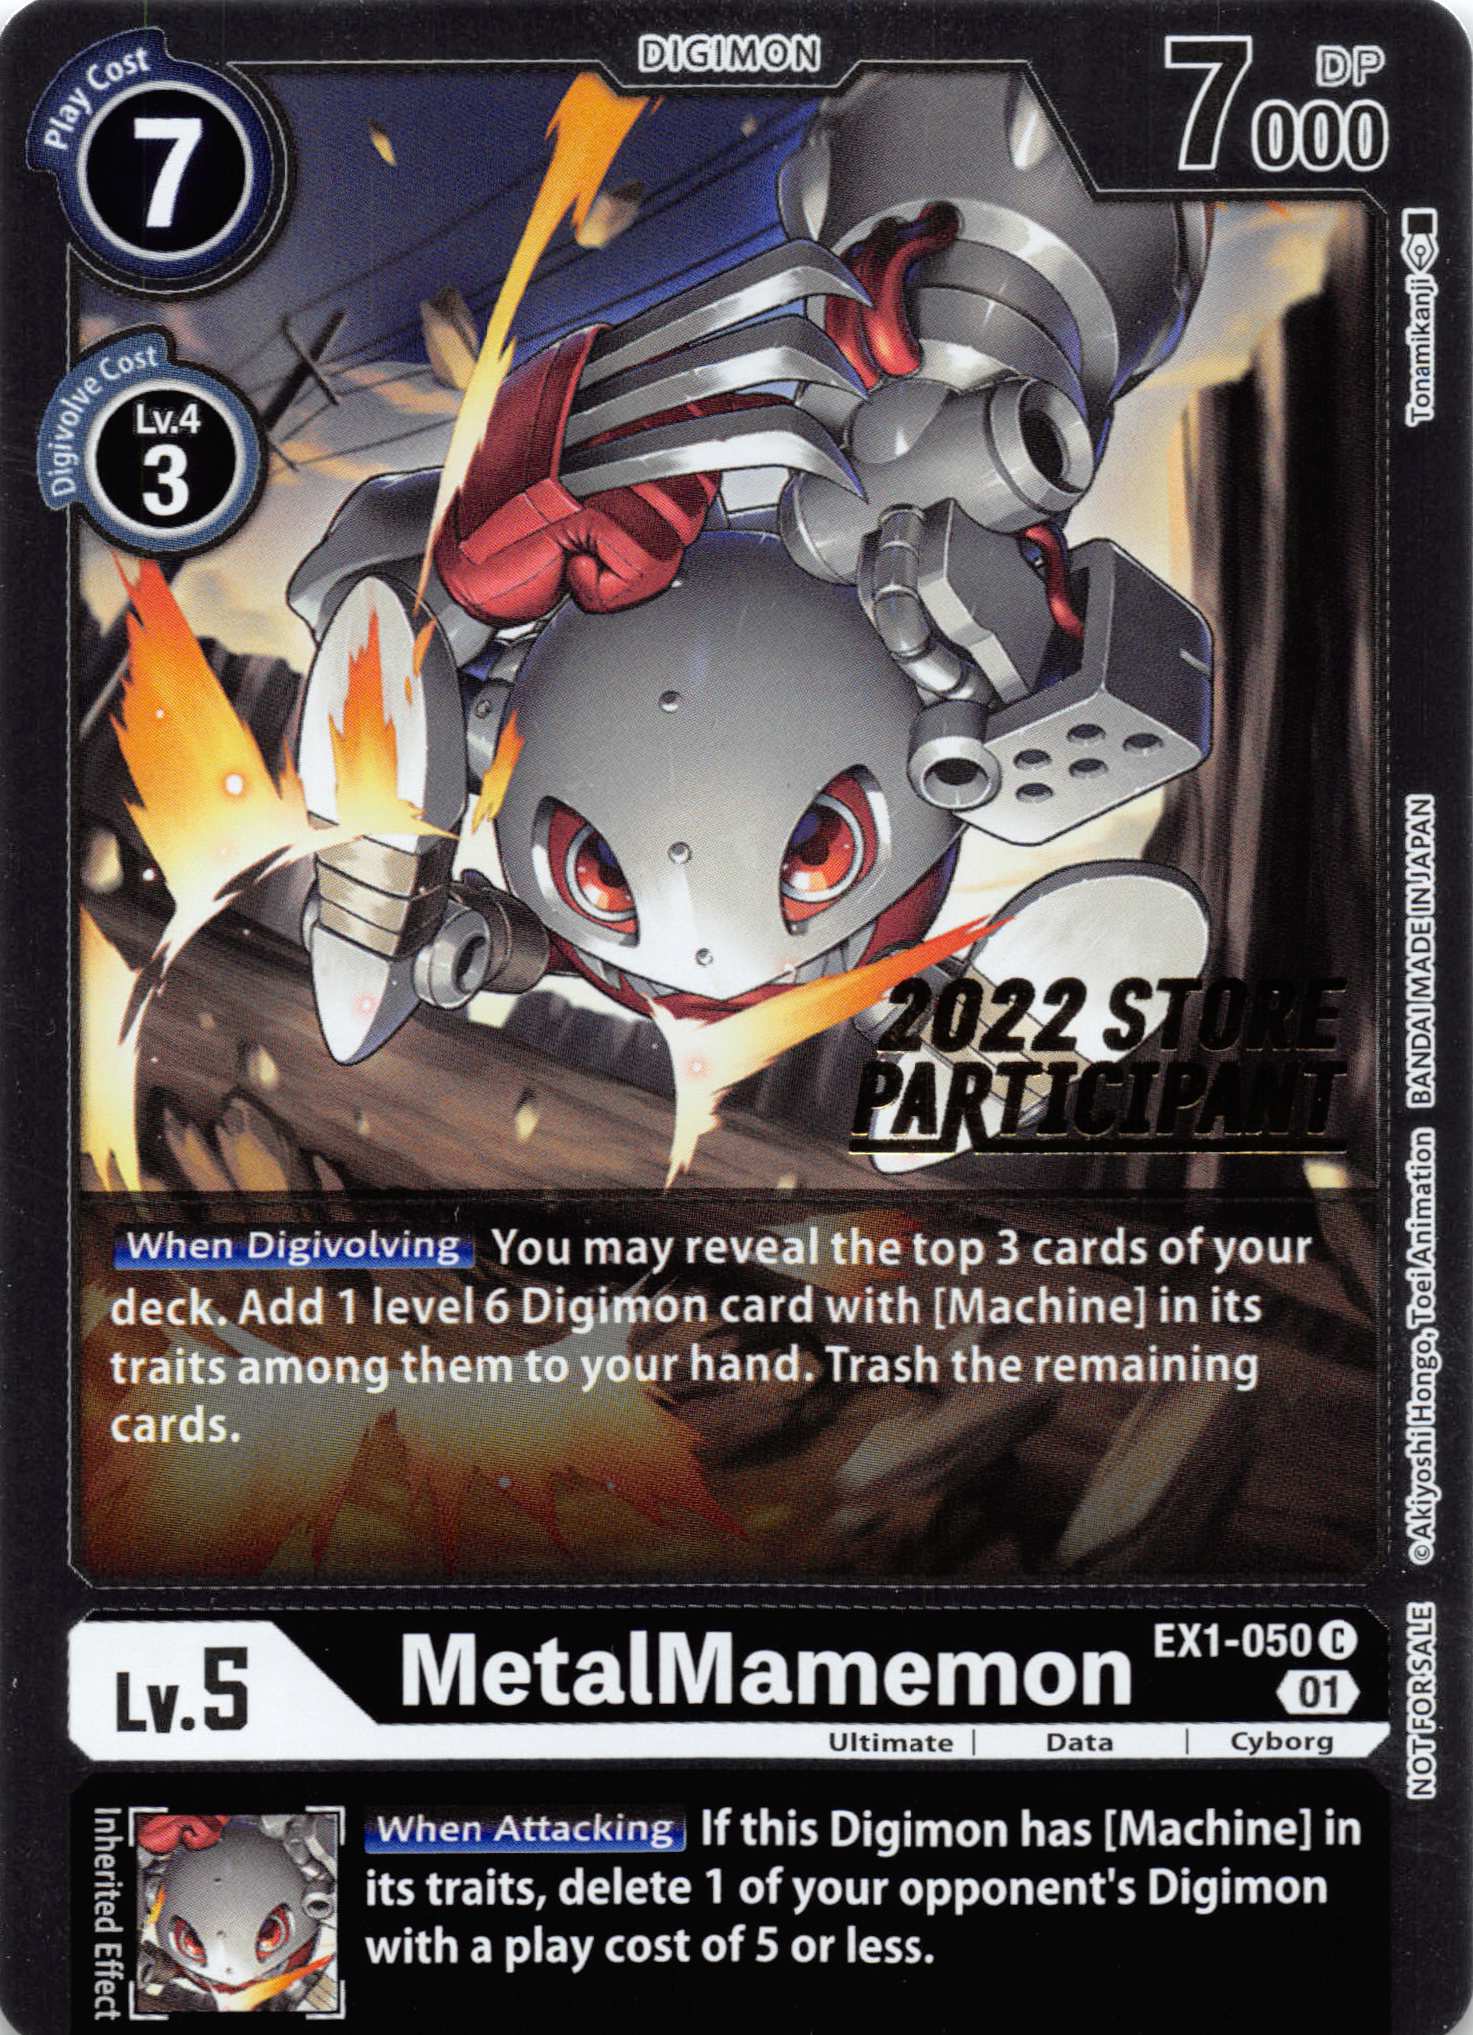 MetalMamemon (2022 Store Participant) [EX1-050] [Classic Collection] Foil